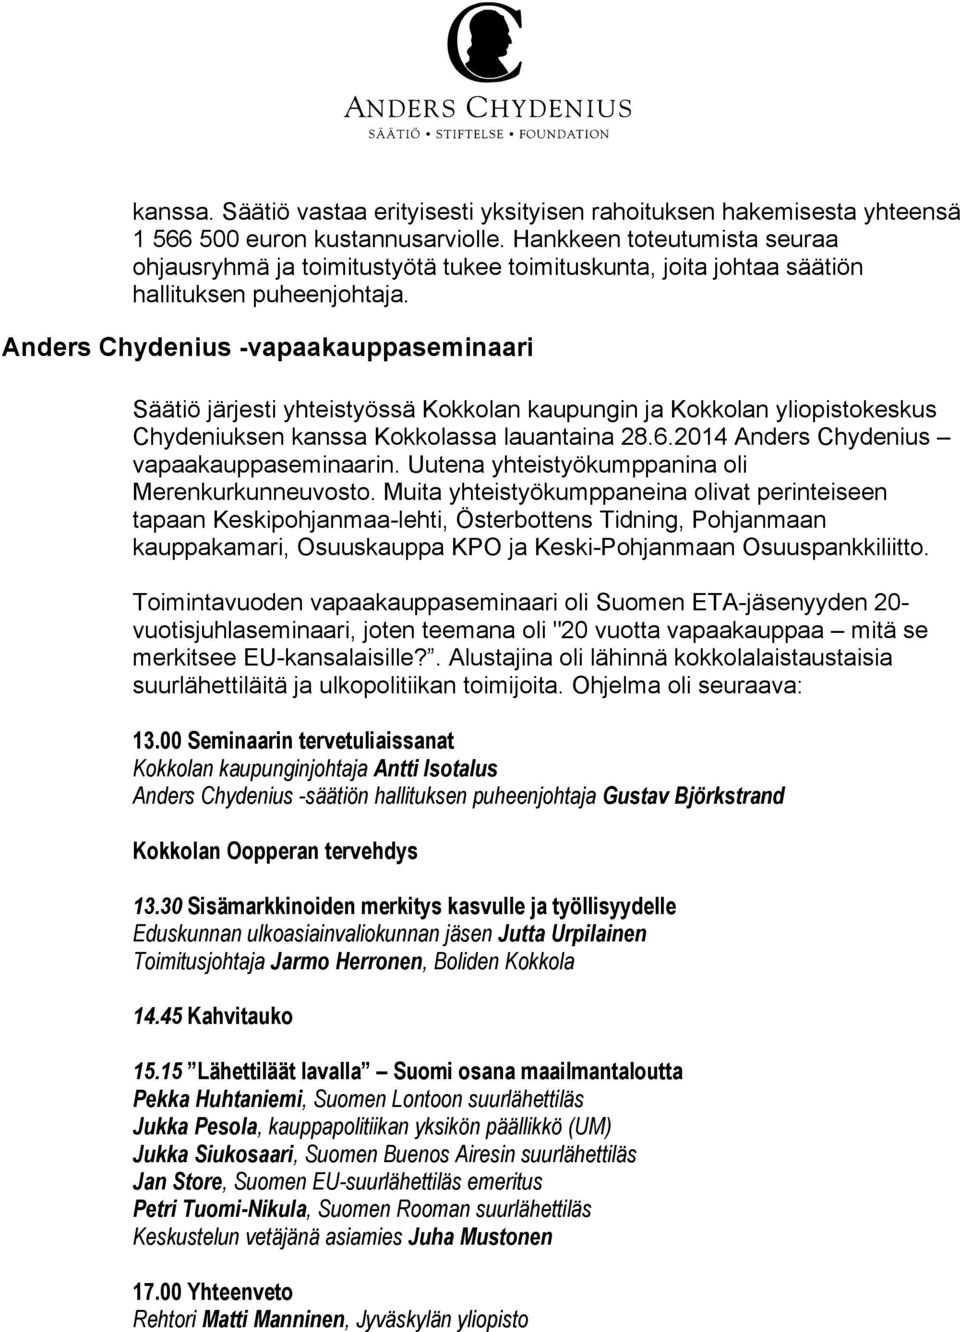 Anders Chydenius -vapaakauppaseminaari Säätiö järjesti yhteistyössä Kokkolan kaupungin ja Kokkolan yliopistokeskus Chydeniuksen kanssa Kokkolassa lauantaina 28.6.